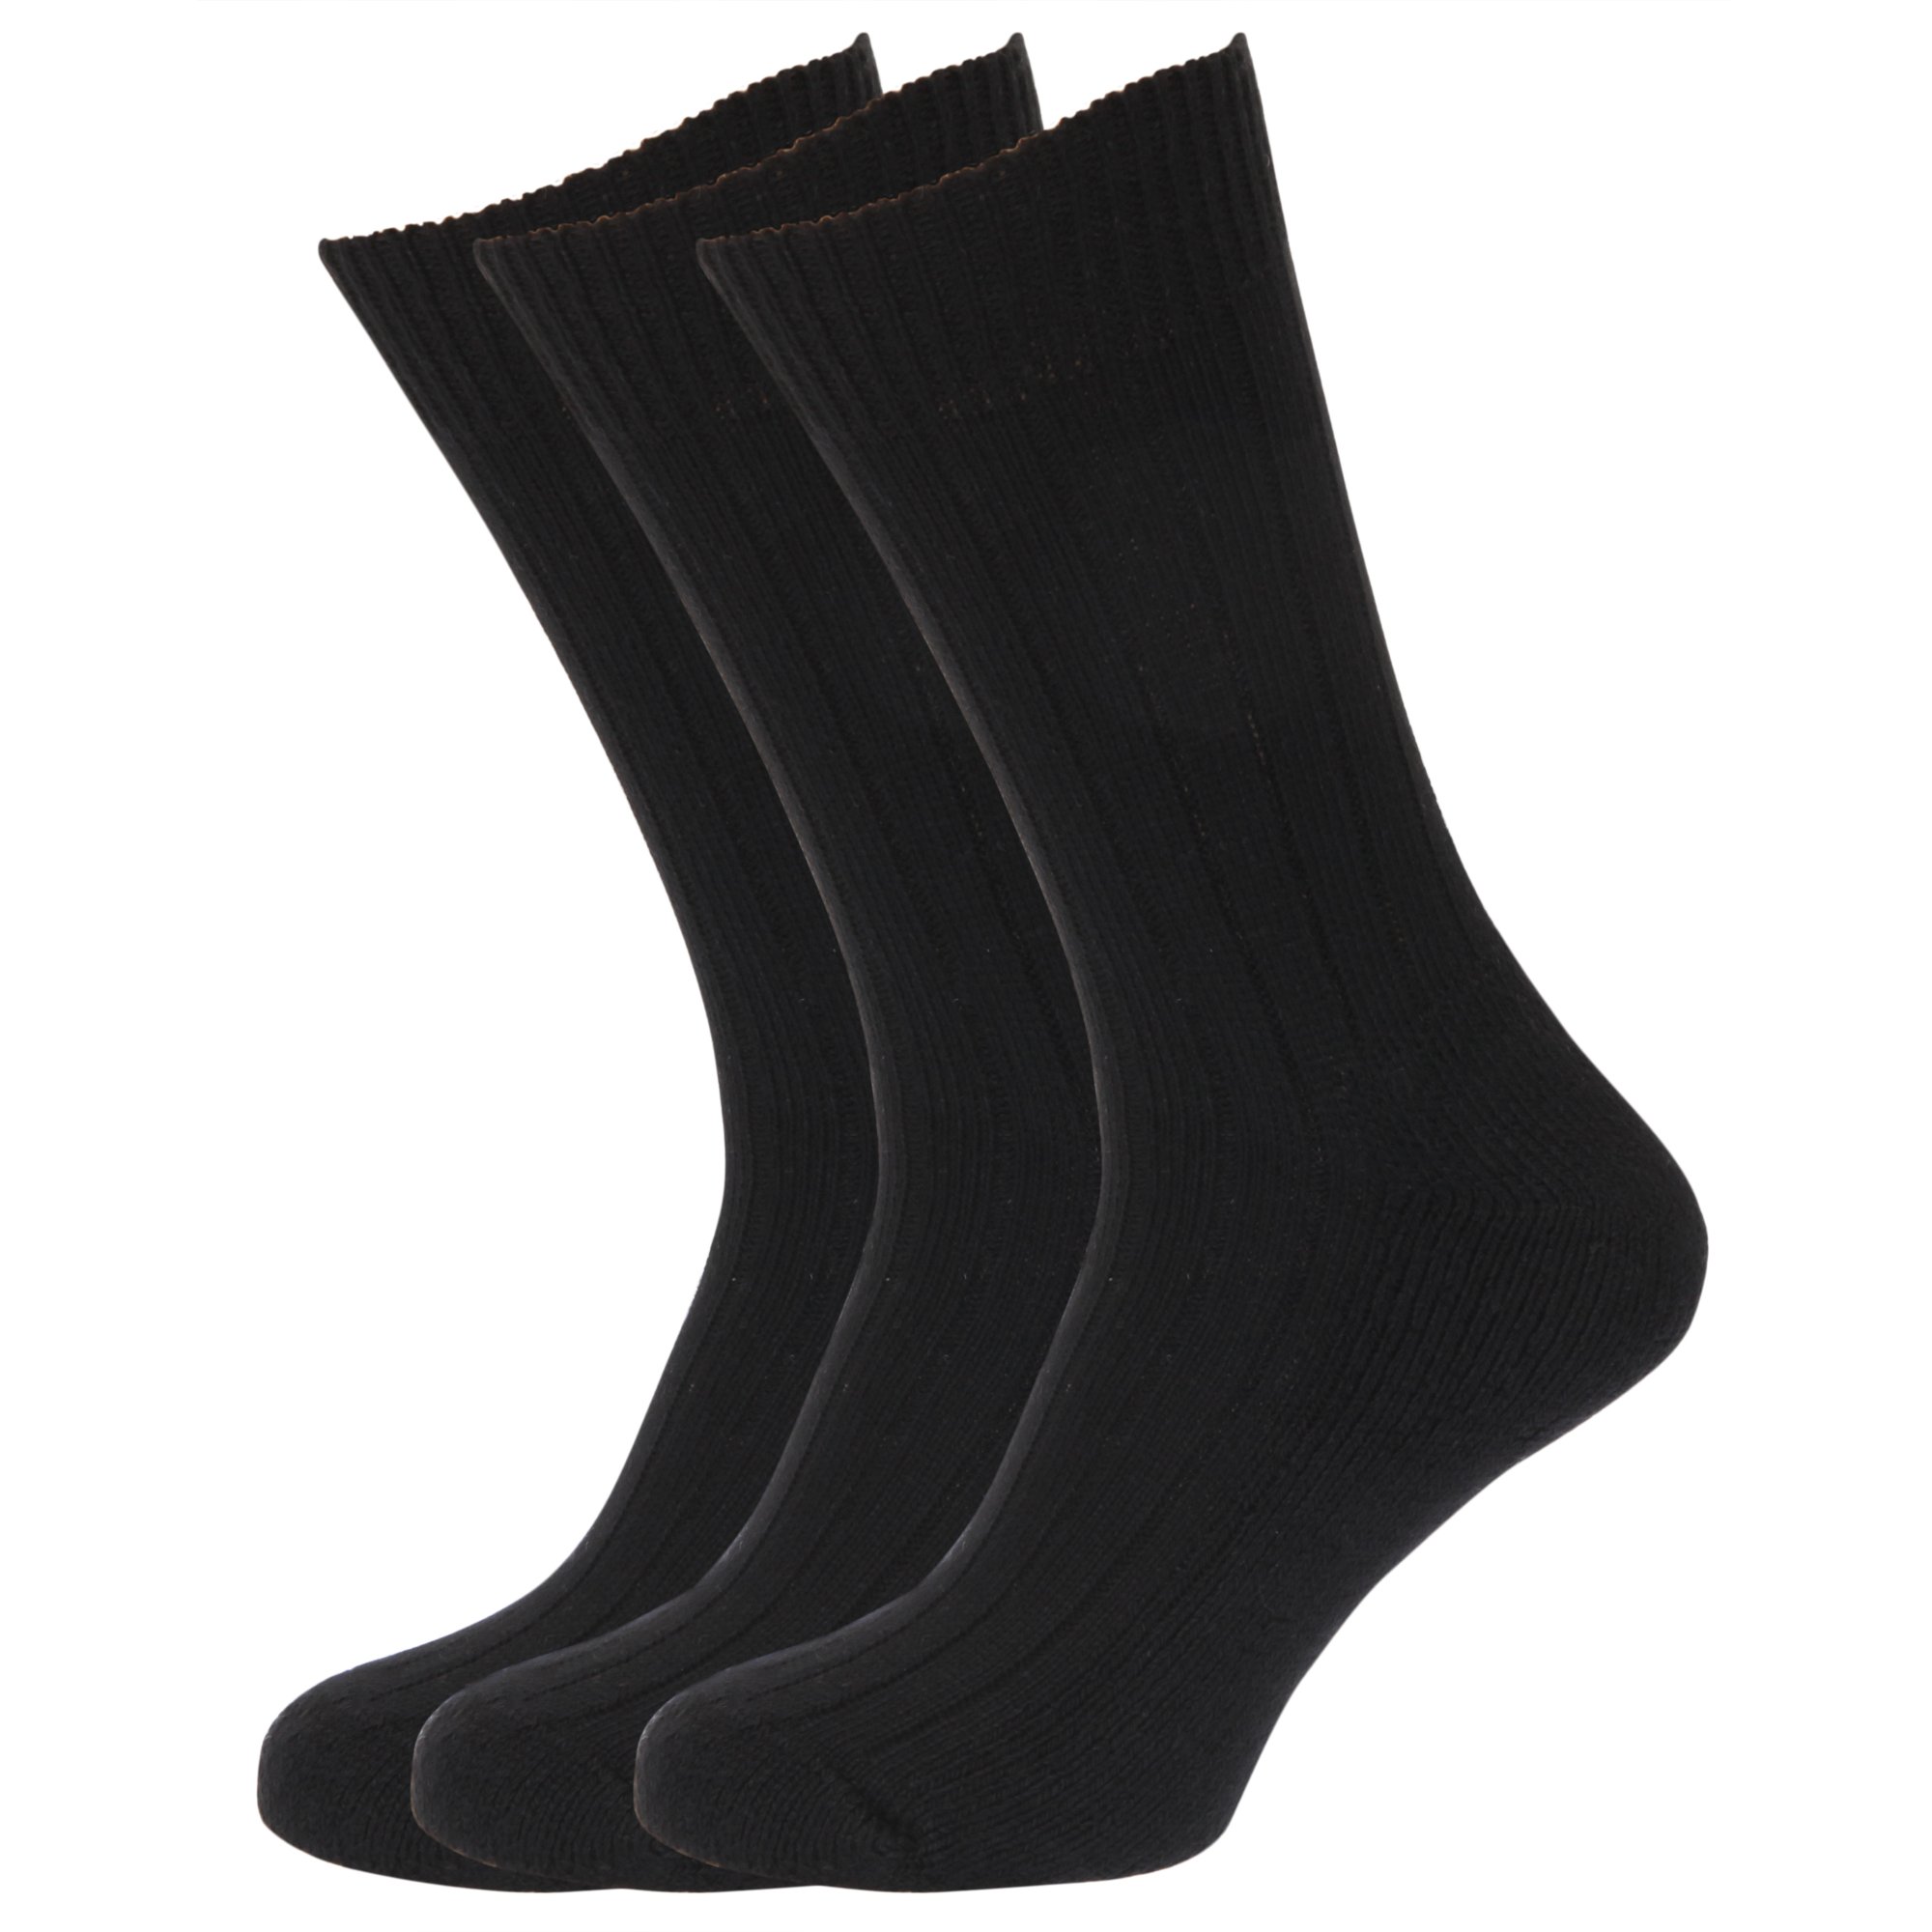 calcetines de hombre tobilleros en algodon sin costuras ni goma blancos